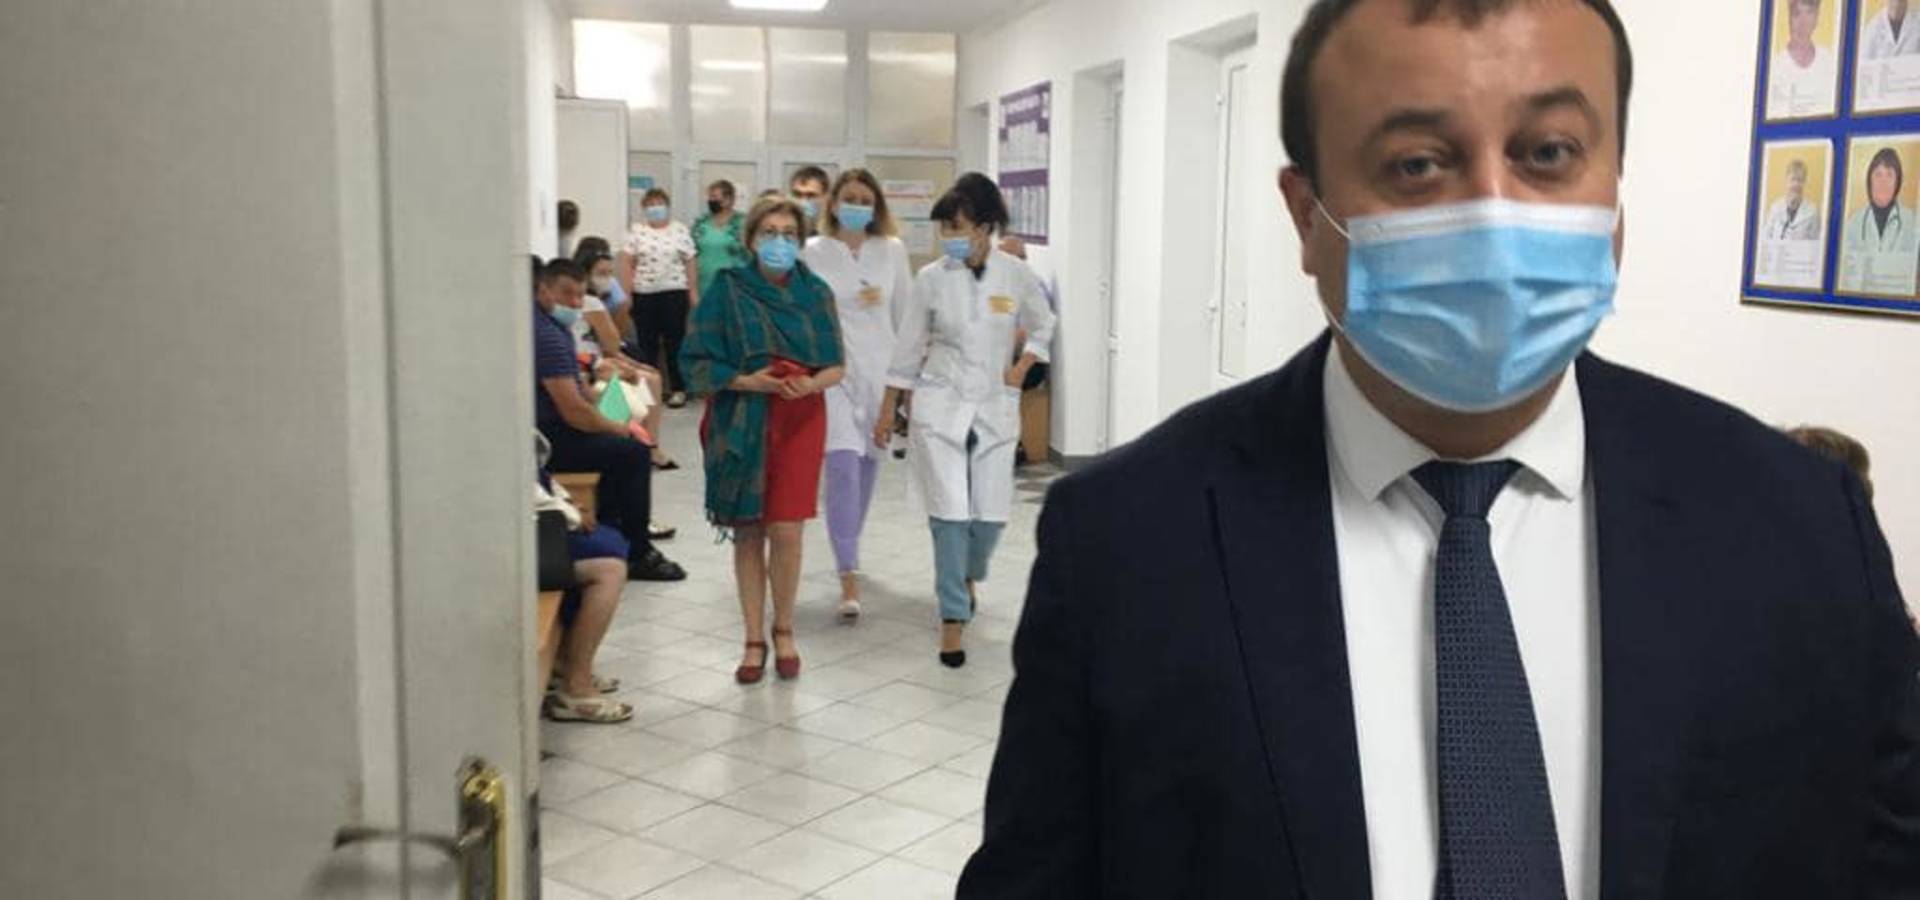 Вакцинація безкоштовна і центрів щеплення на Вінниччині достатньо - губернатор закликав людей вакцинуватись